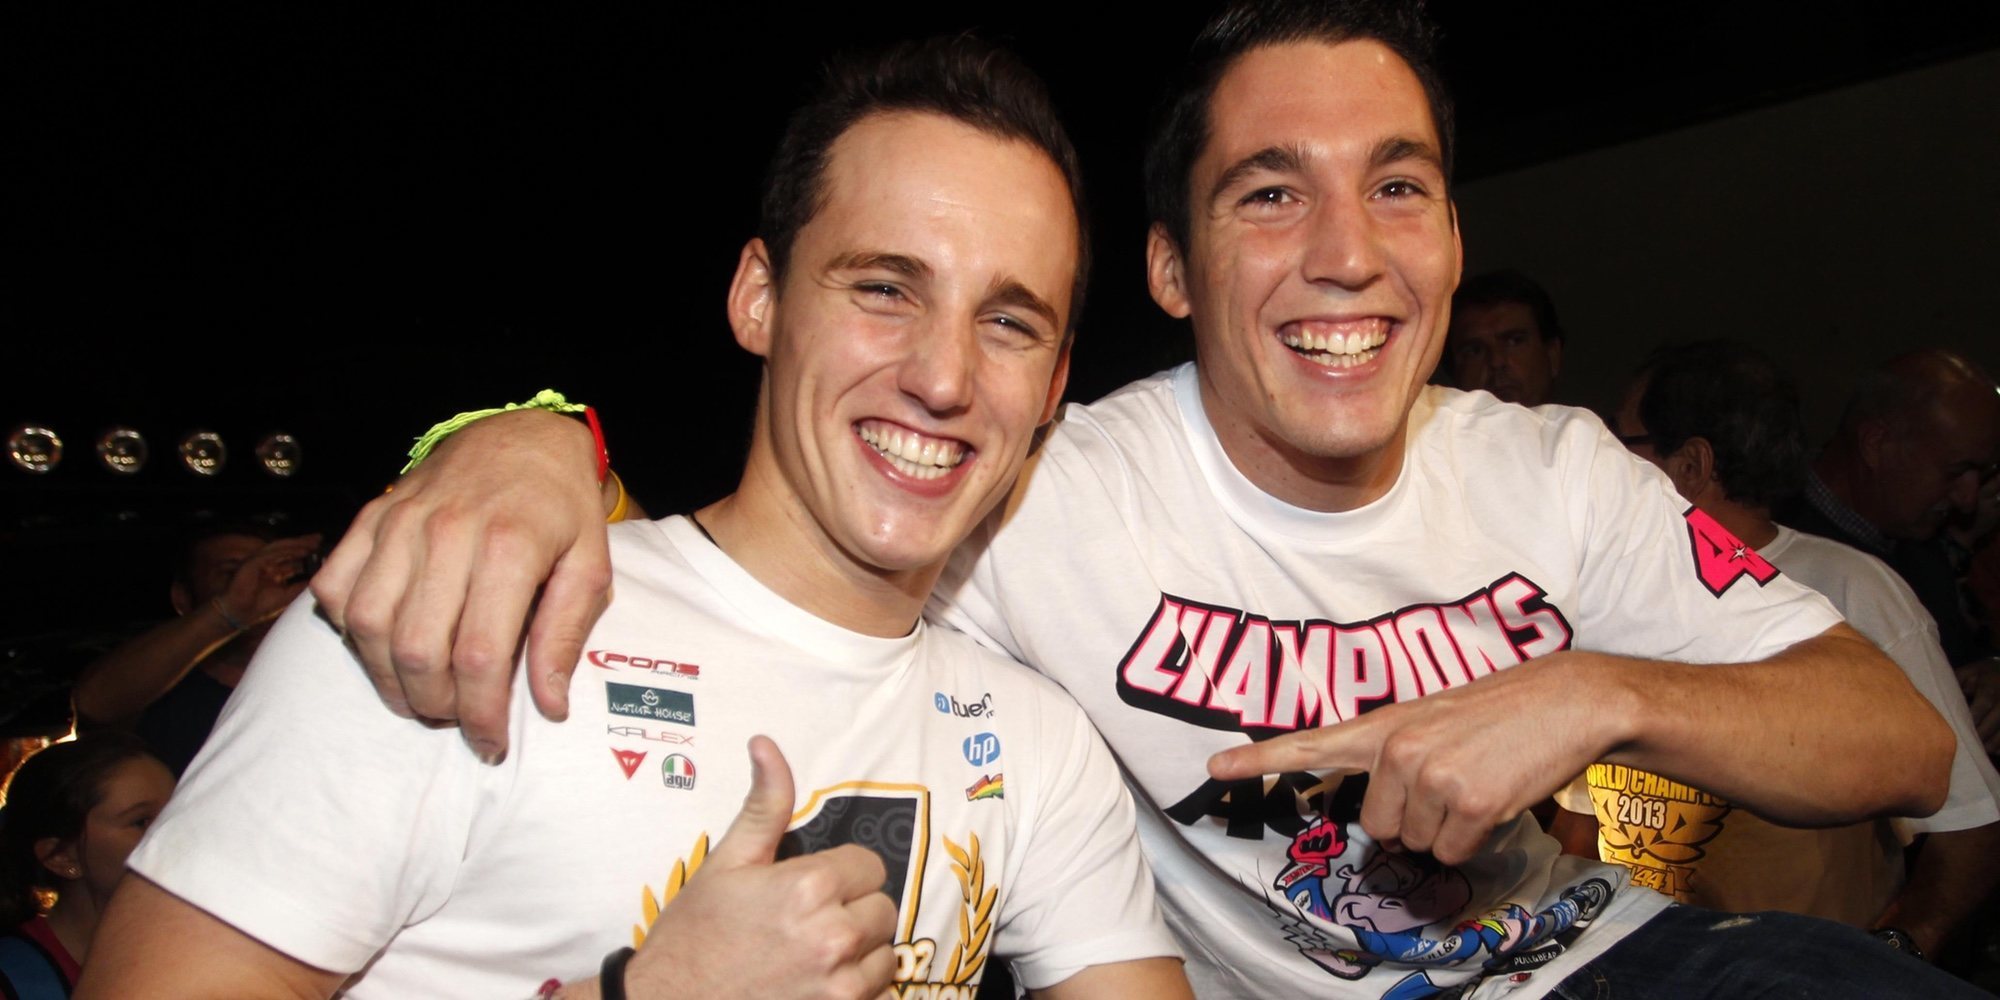 Así son y así se llevan Pol y Aleix Espargaró, dos hermanos marcados por la MotoGP